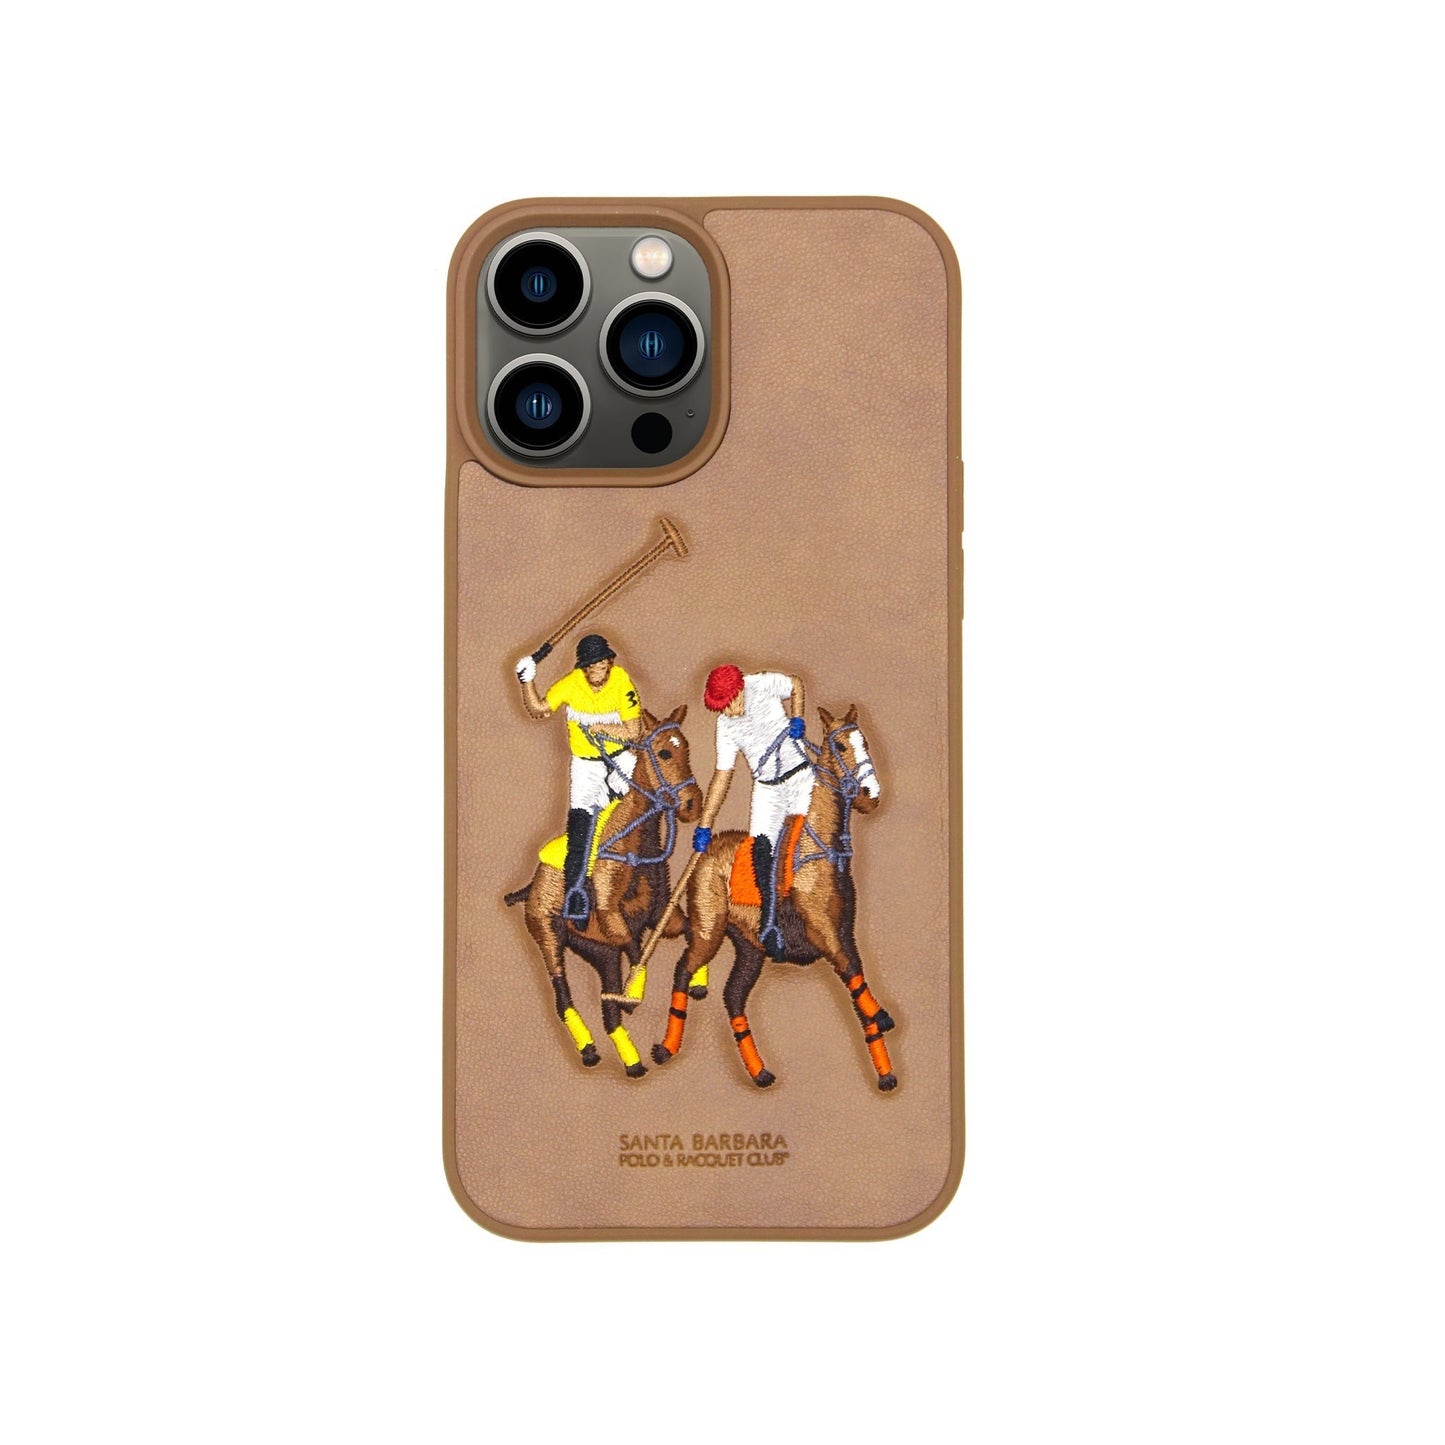 Santa Barbara Polo Jockey Case For Iphone